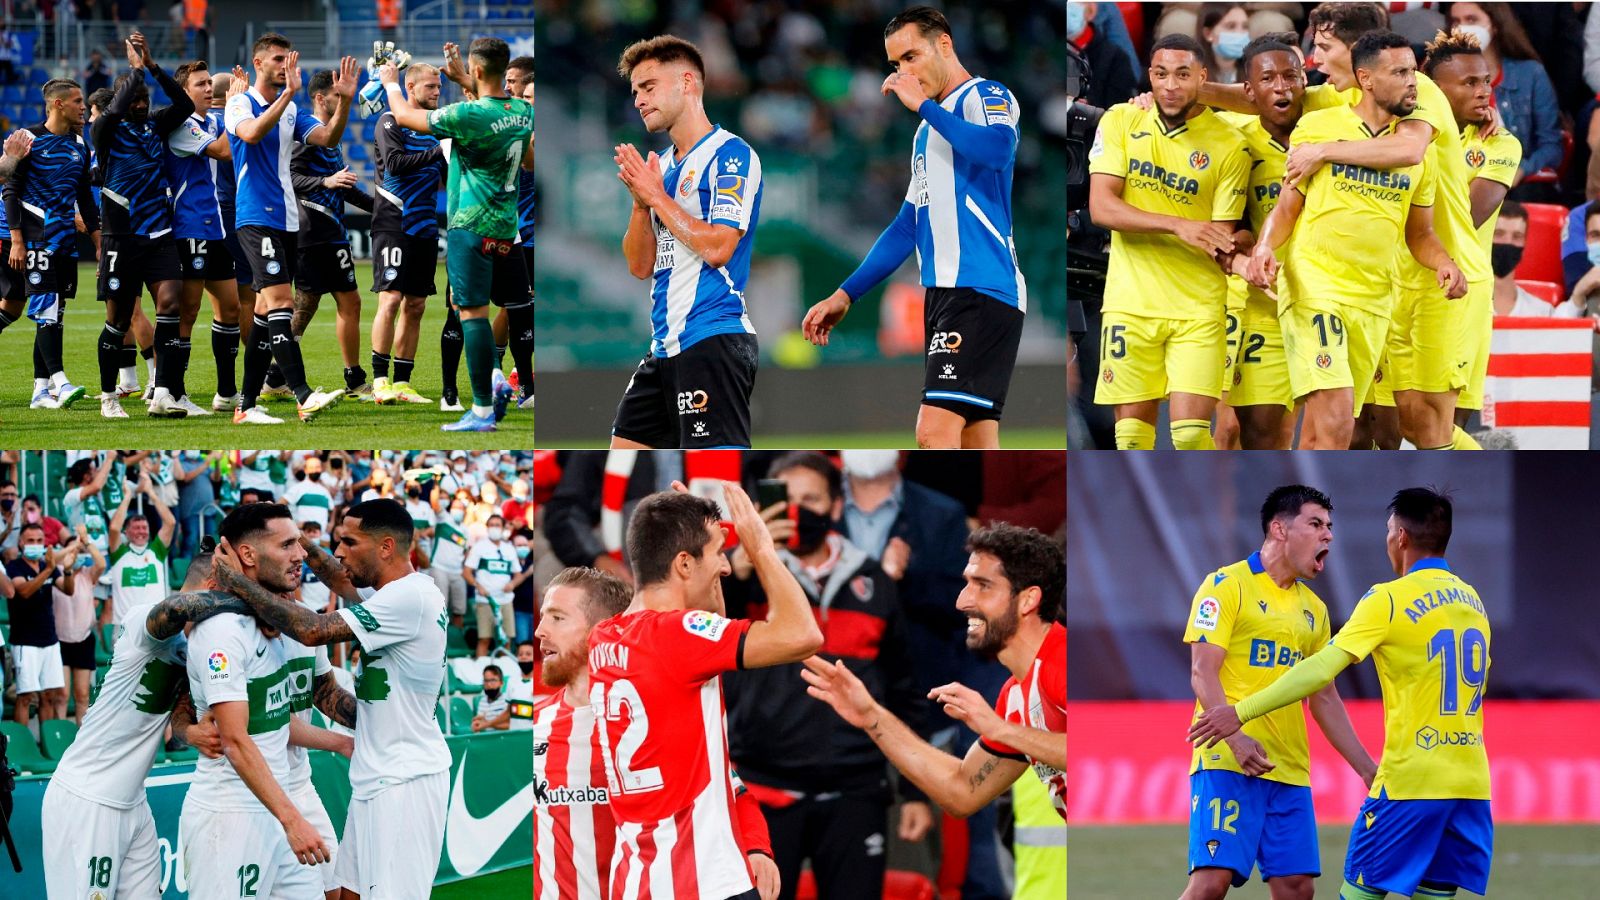 La jornada 11 de Liga se abre este martes con el Alavés - Elche, Espanyol - Athletic y Villarreal - Cádiz.